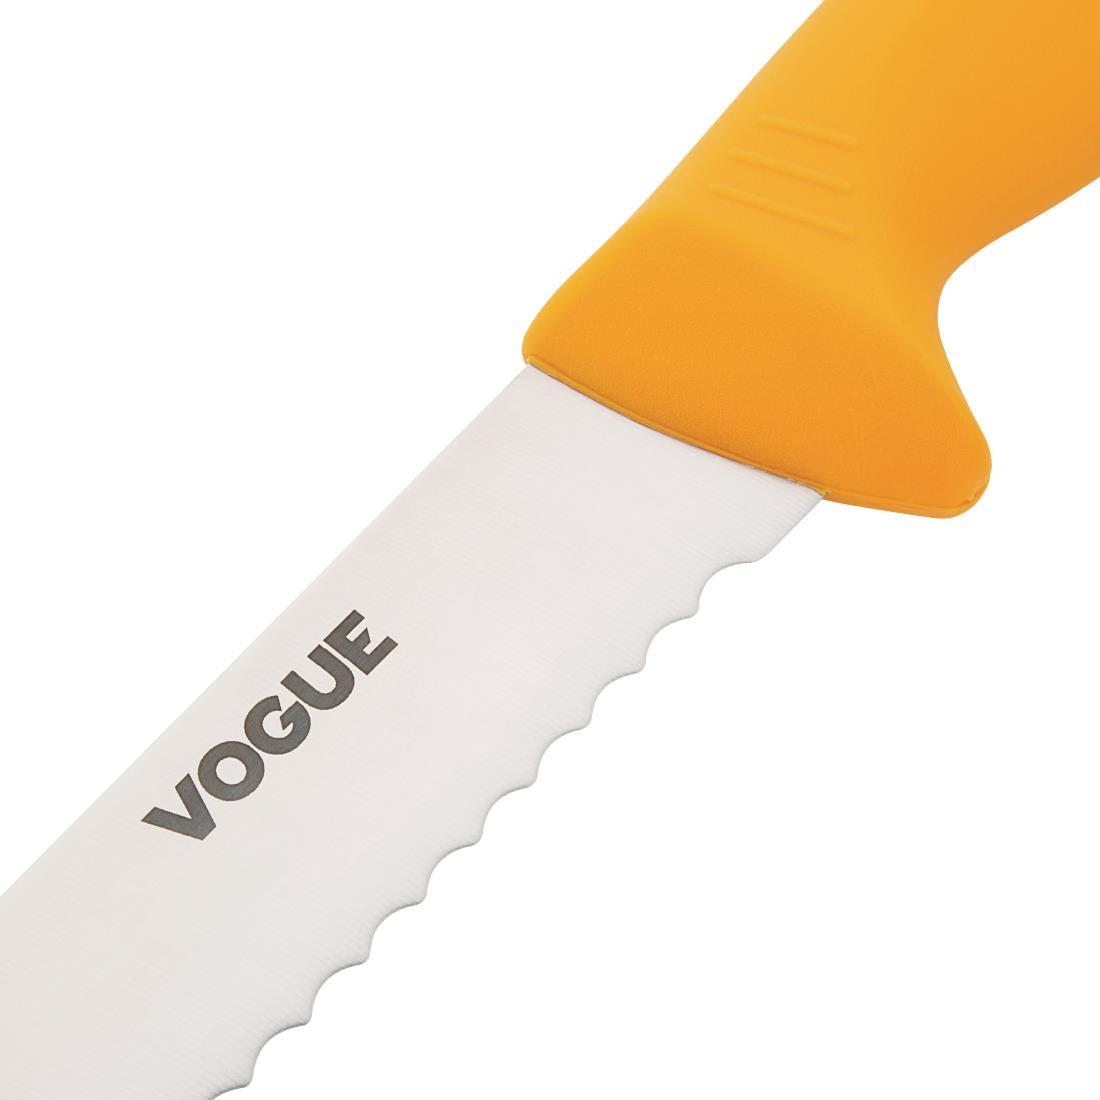 Vogue Soft Grip Pro Serrated Slicer 28cm - GH530  - 3